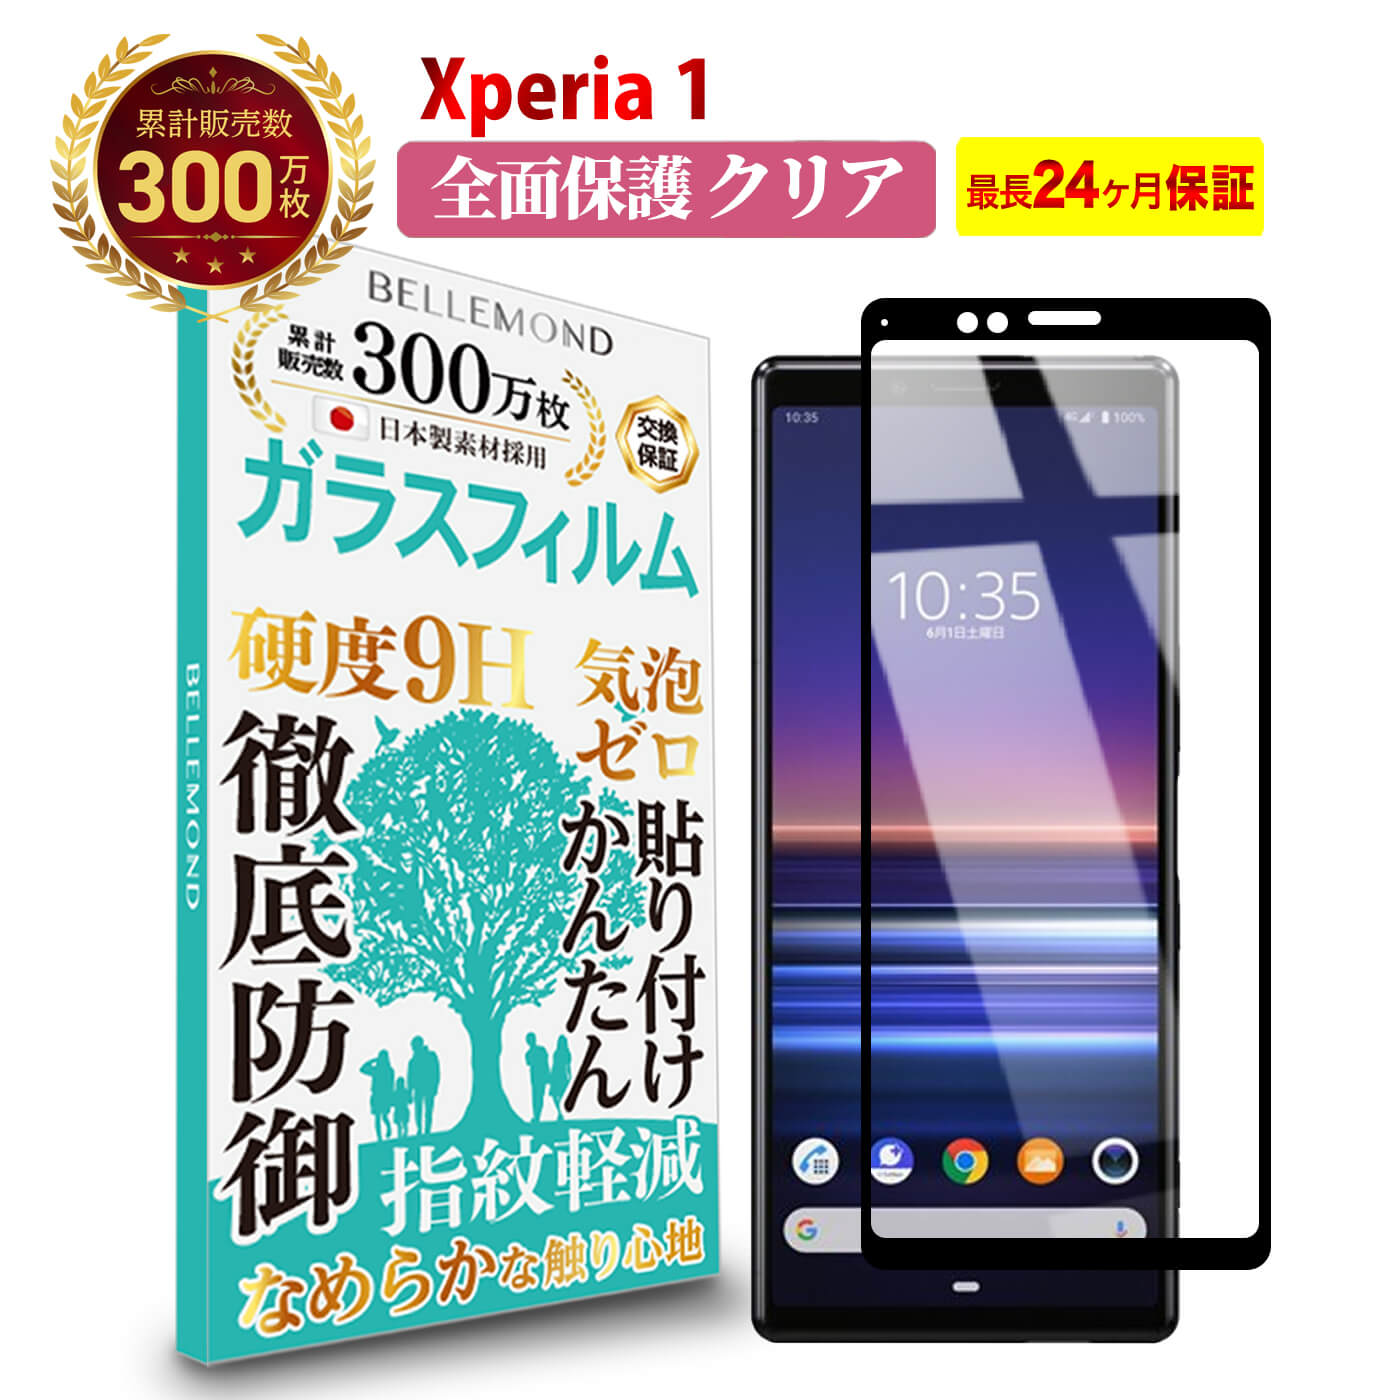 【LINE登録で10%OFF!】 Xperia 1 全面保護 ガラスフィ